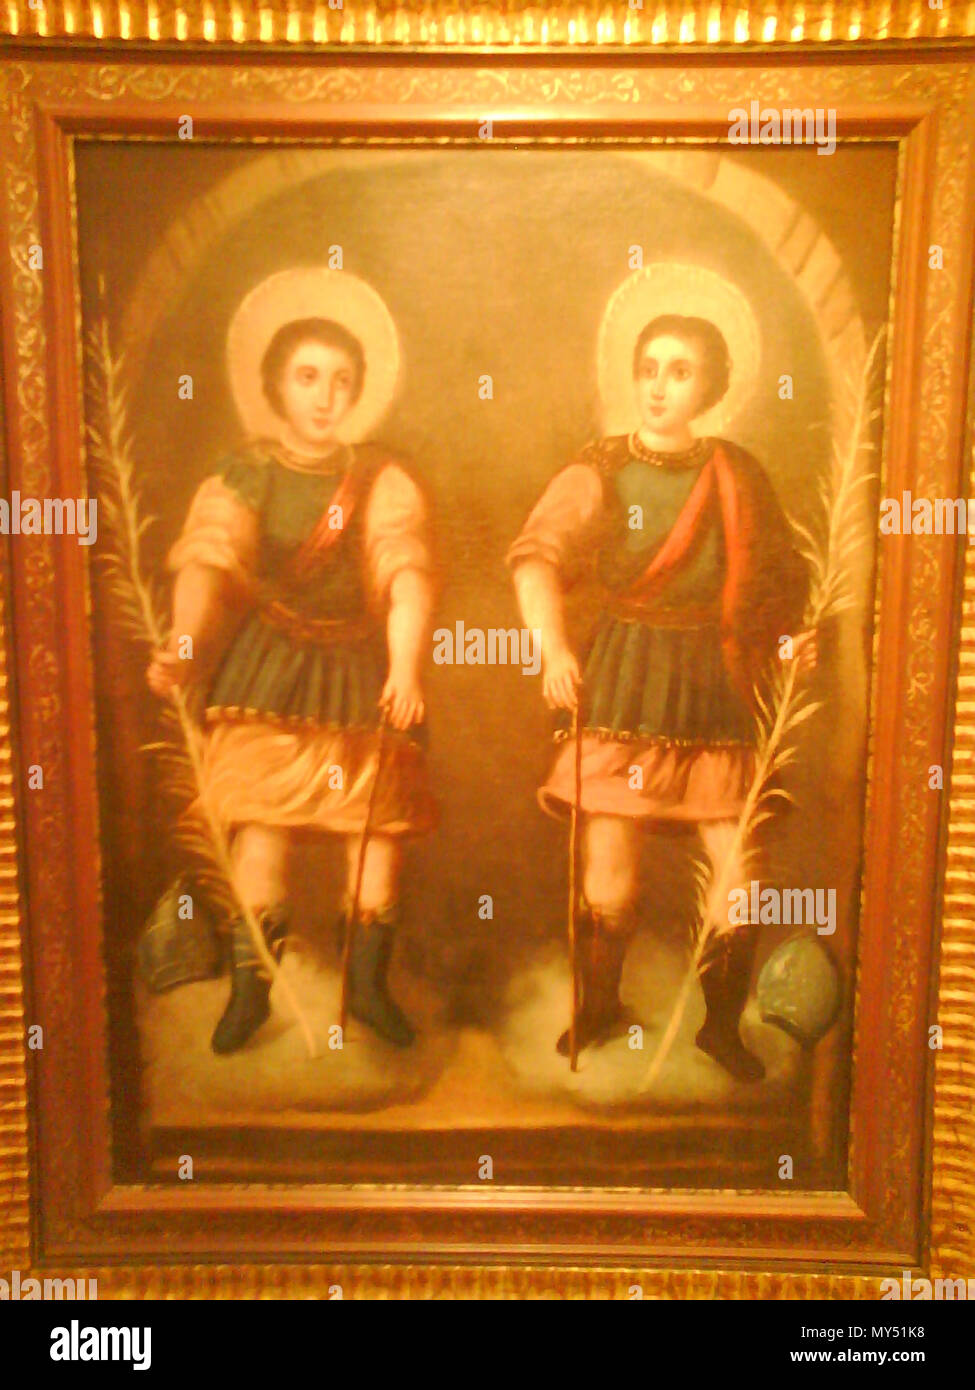 . Anglais : Peinture avec saints Bonosus et Maximianus, légendaire martirs de Arjona, Jaén, Espagne . 18e siècle. Anonyme, 80 BonosMax andalou Banque D'Images